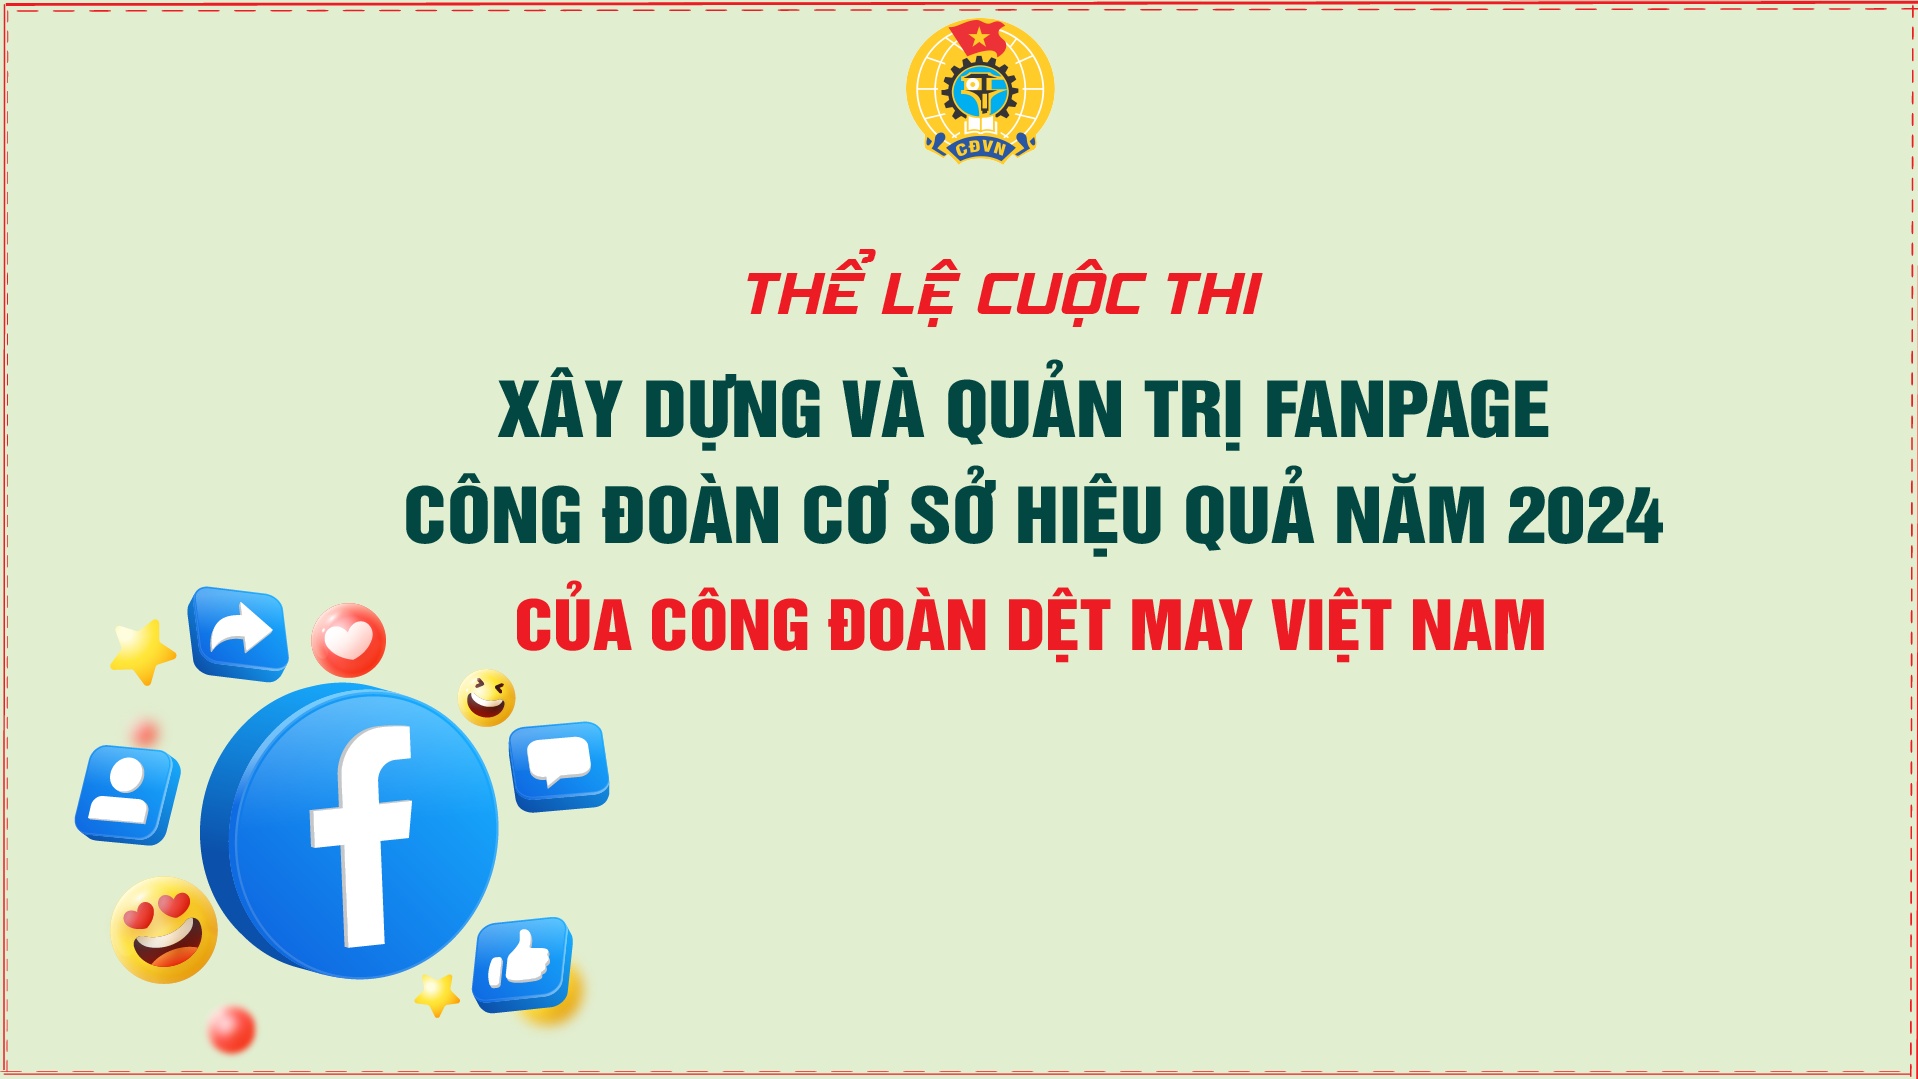 Thể lệ cuộc thi về Fanpage công đoàn cơ sở ngành Dệt May Việt Nam